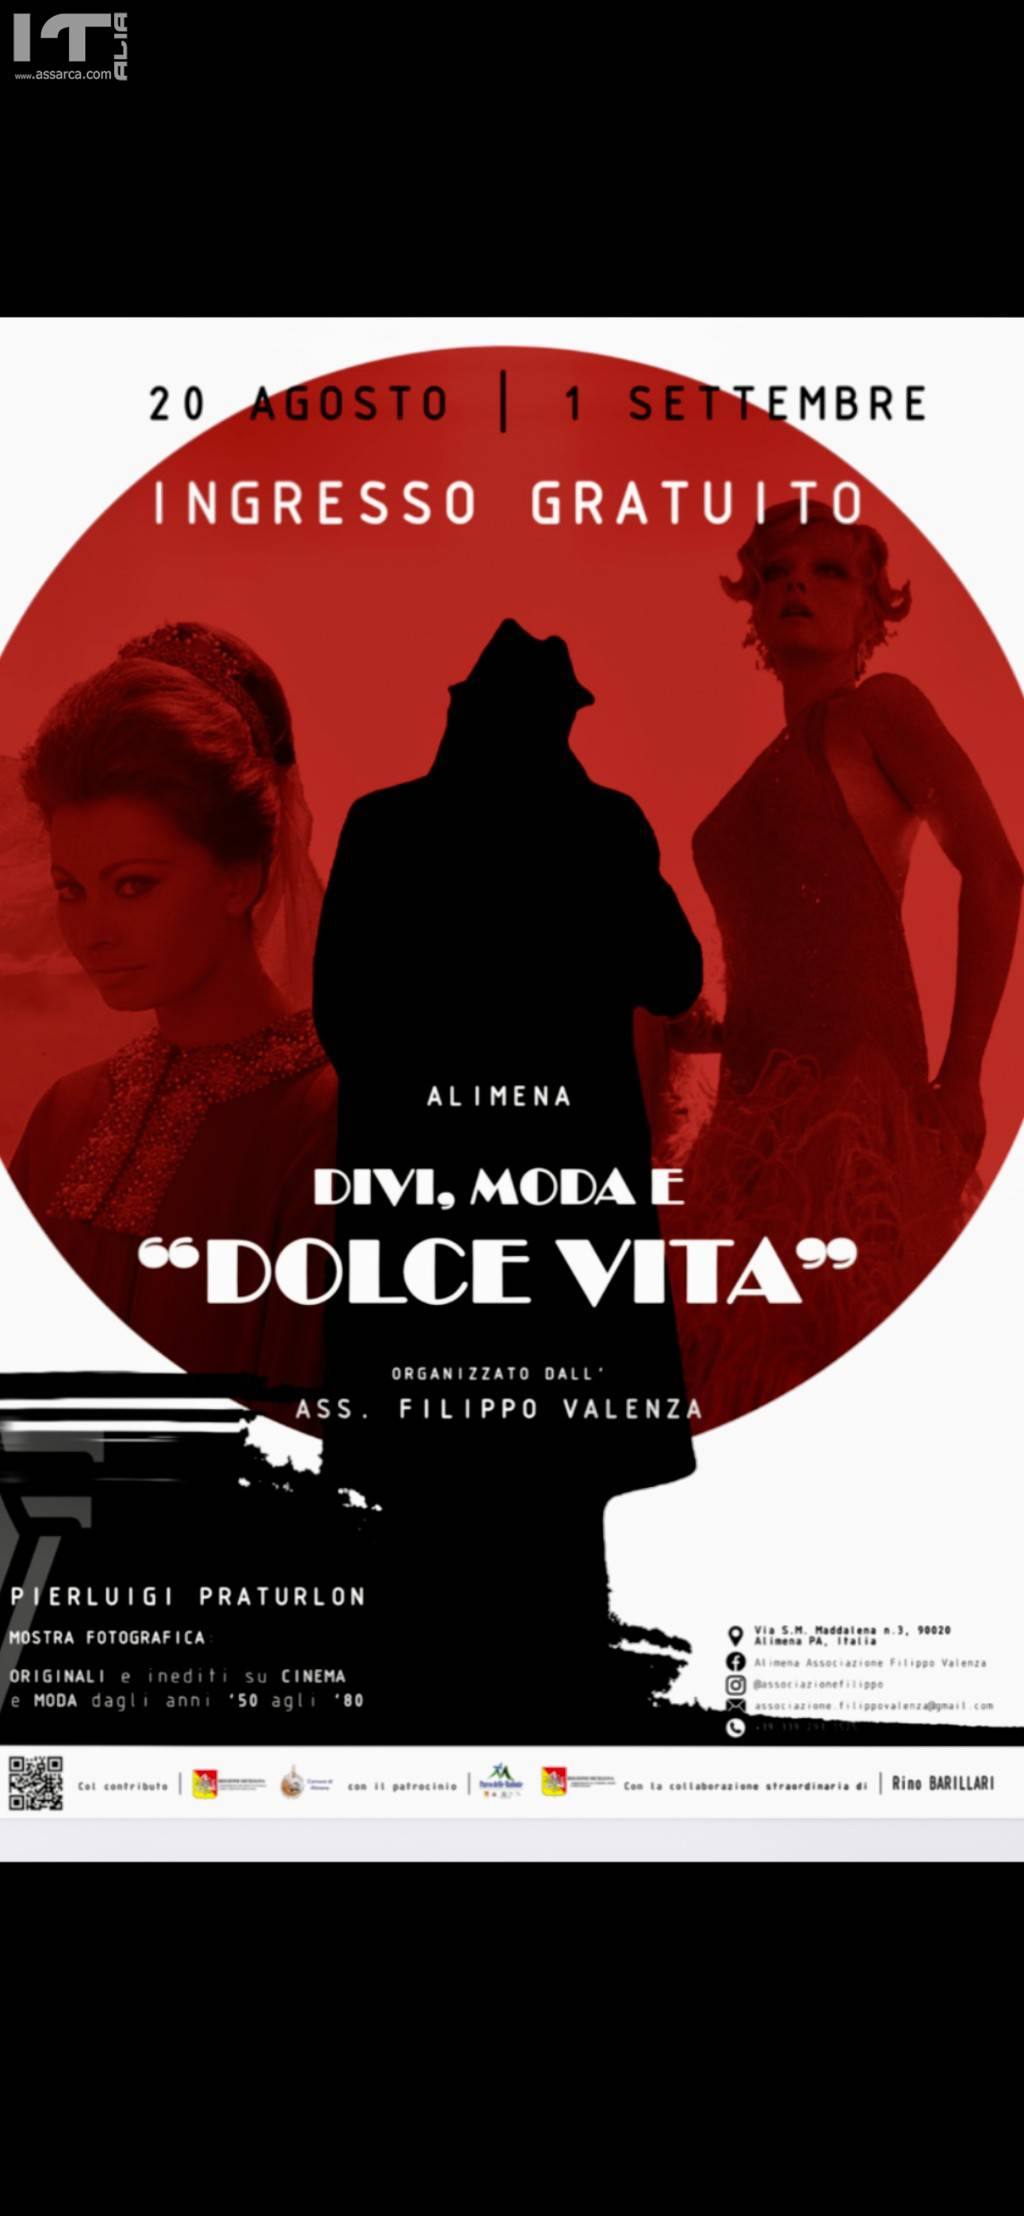 DIVI, MODA E DOLCE VITA Foto originali di PIerluigi Praturlon sul cinema italiano